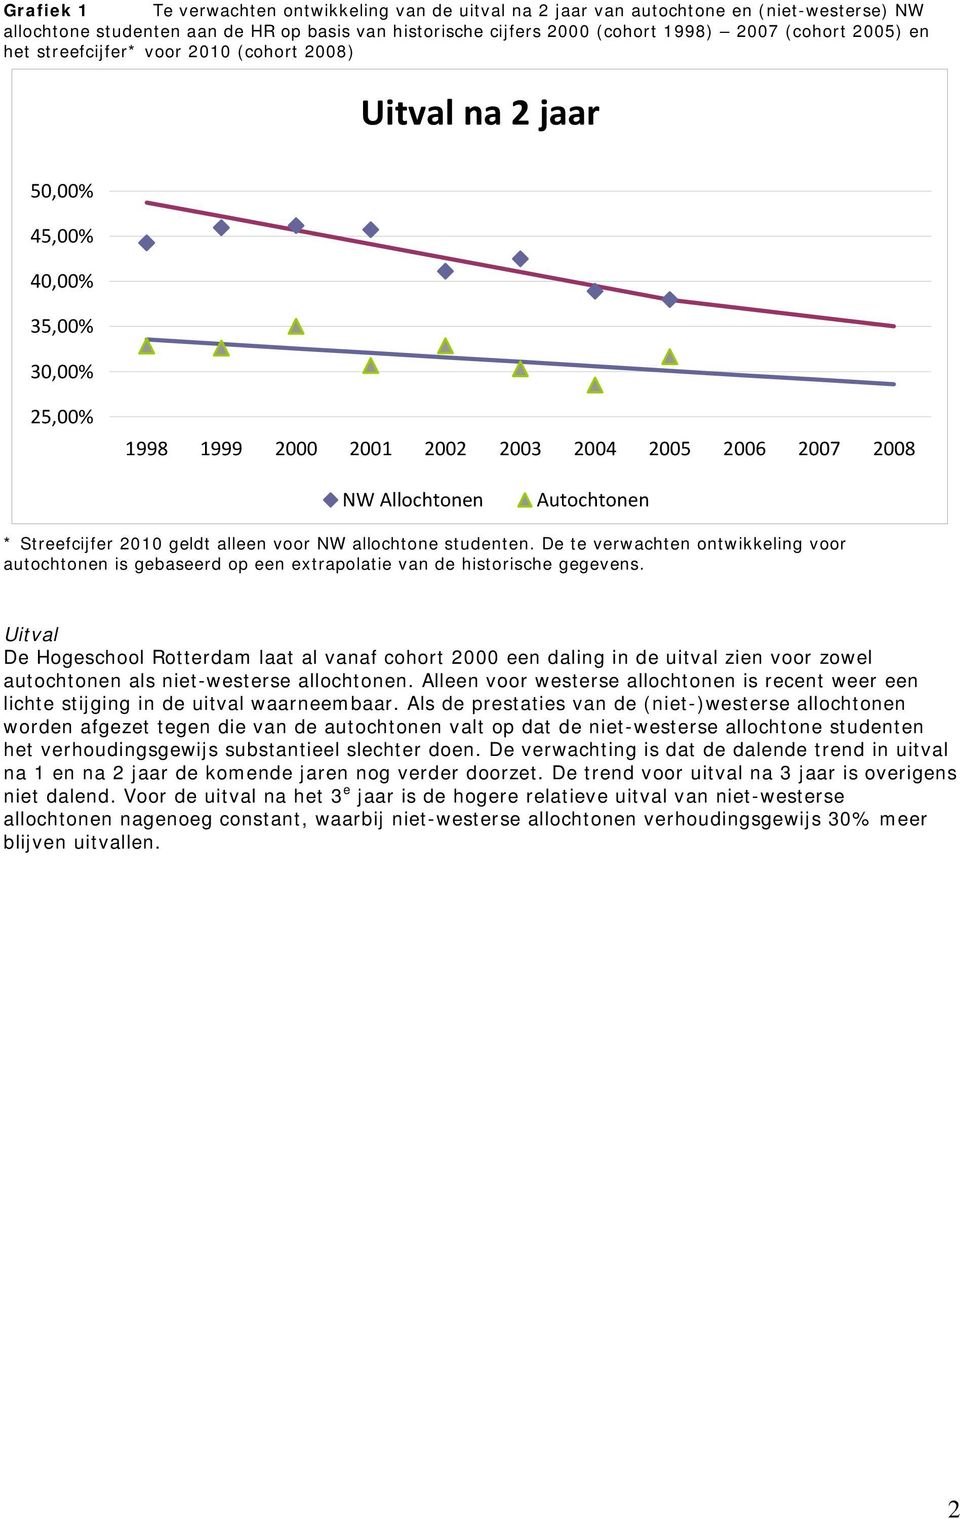 Streefcijfer 2010 geldt alleen voor NW allochtone studenten. De te verwachten ontwikkeling voor autochtonen is gebaseerd op een extrapolatie van de historische gegevens.